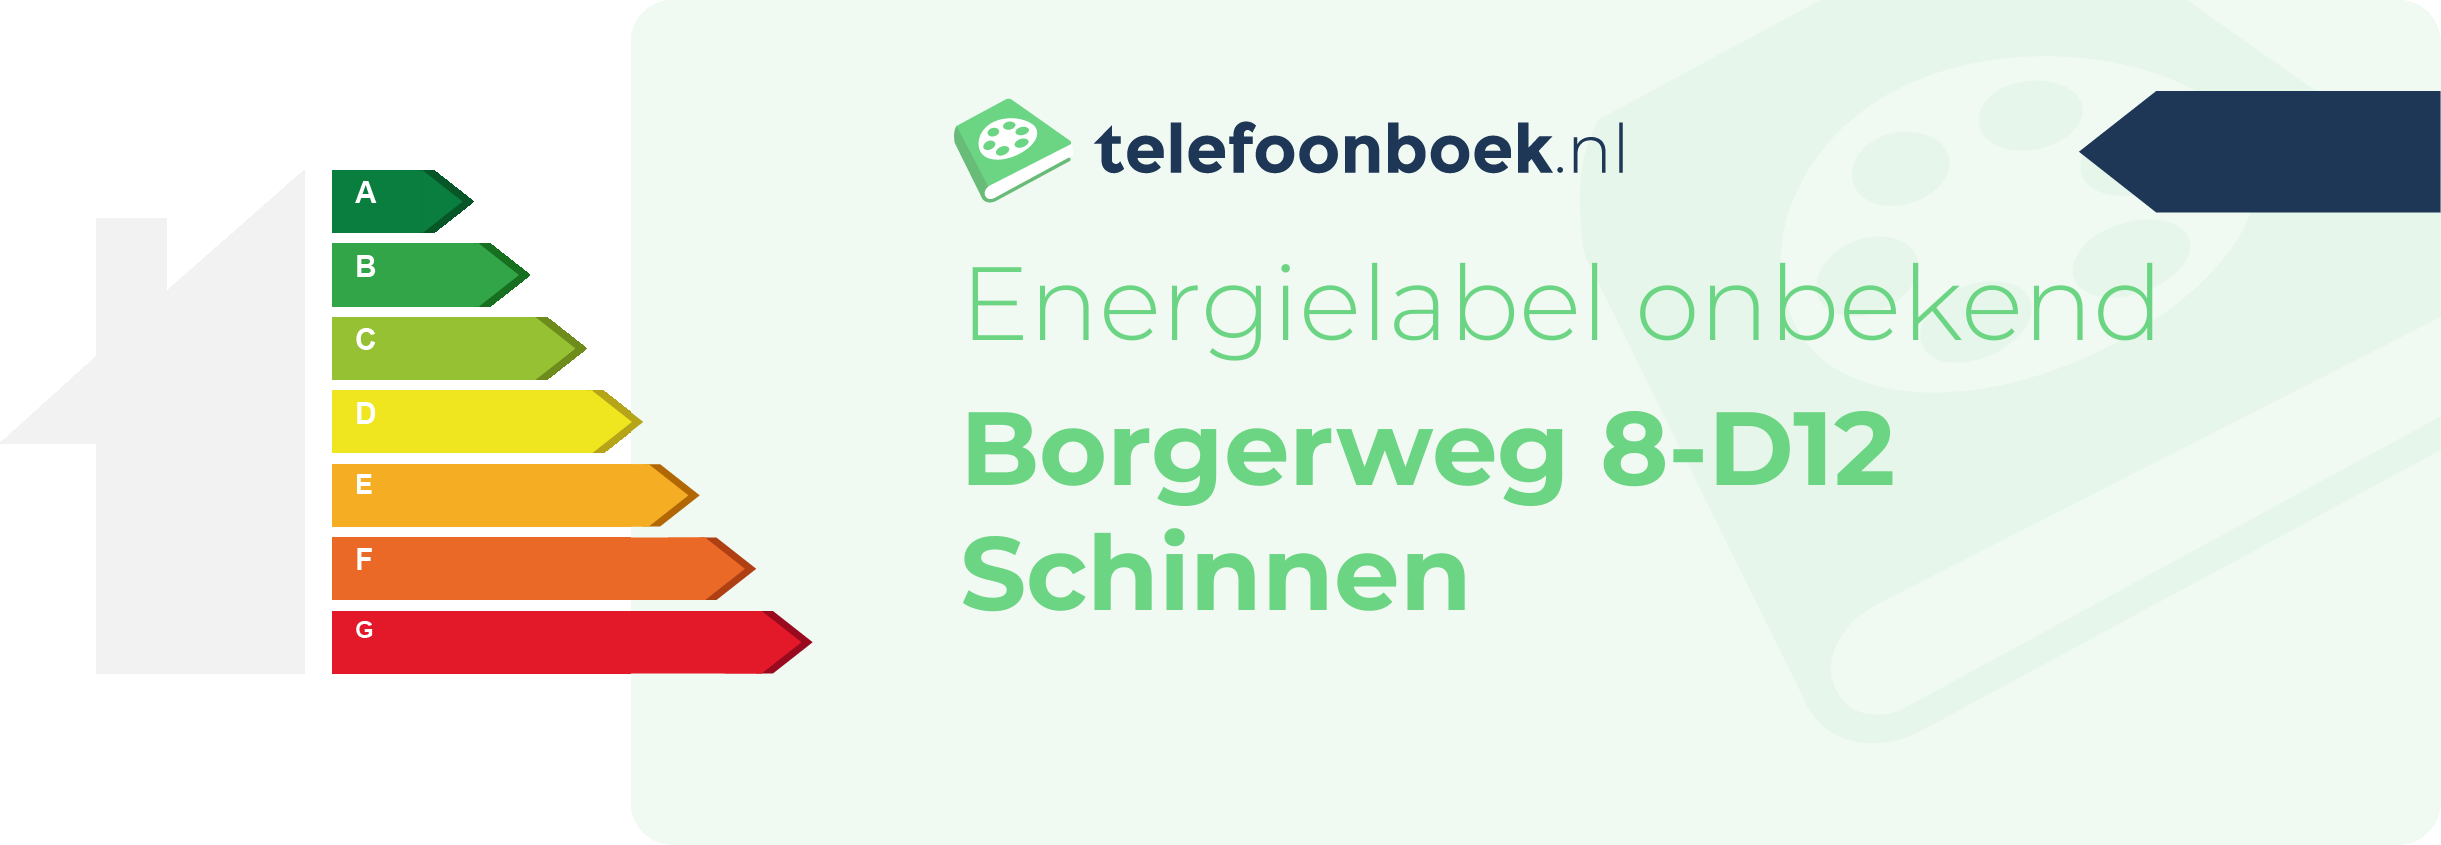 Energielabel Borgerweg 8-D12 Schinnen